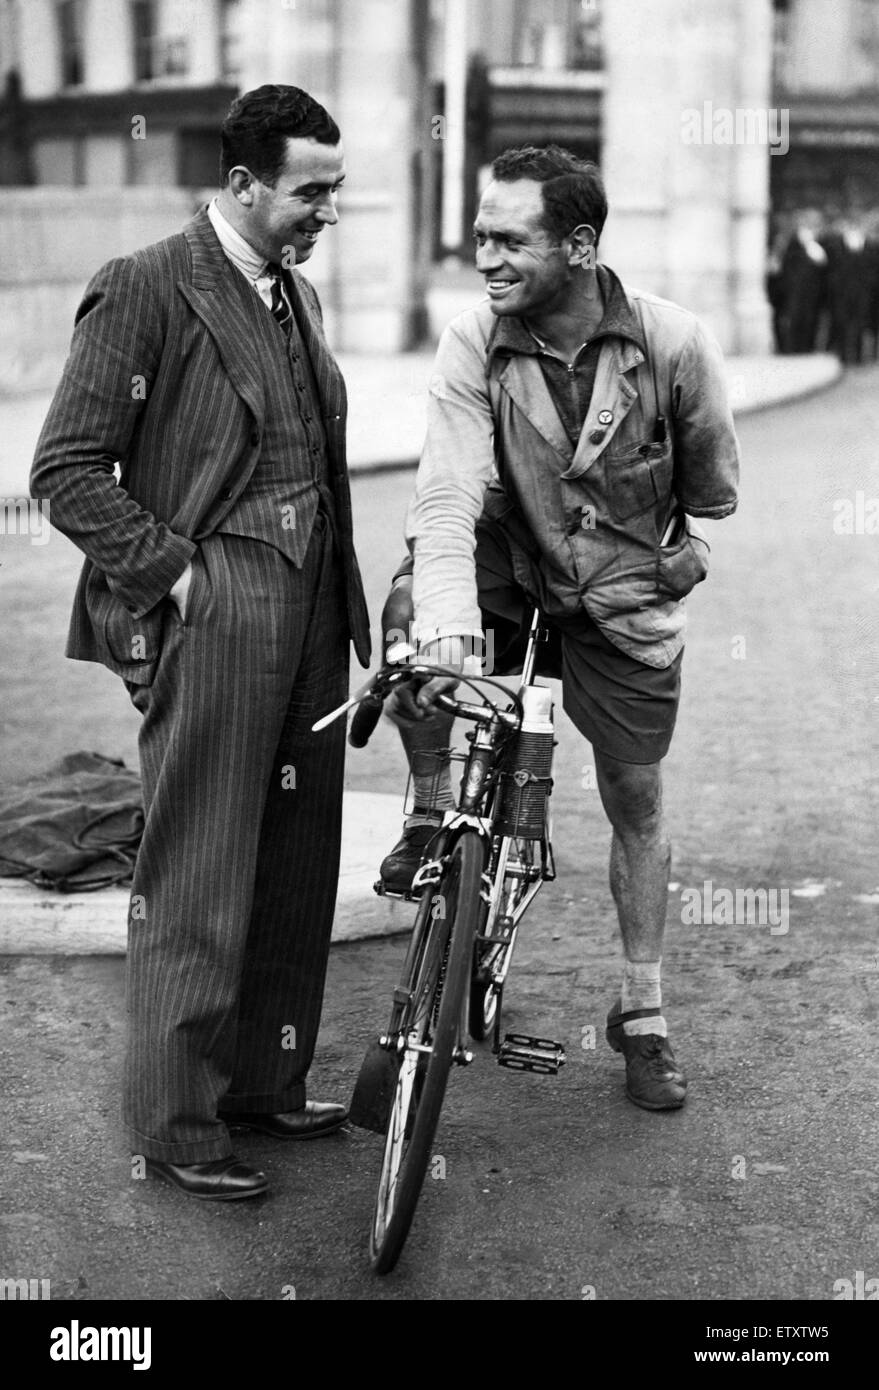 Everton futbolista Dixie Dean hablando con un ciclista en Liverpool. Circa 1936. Foto de stock